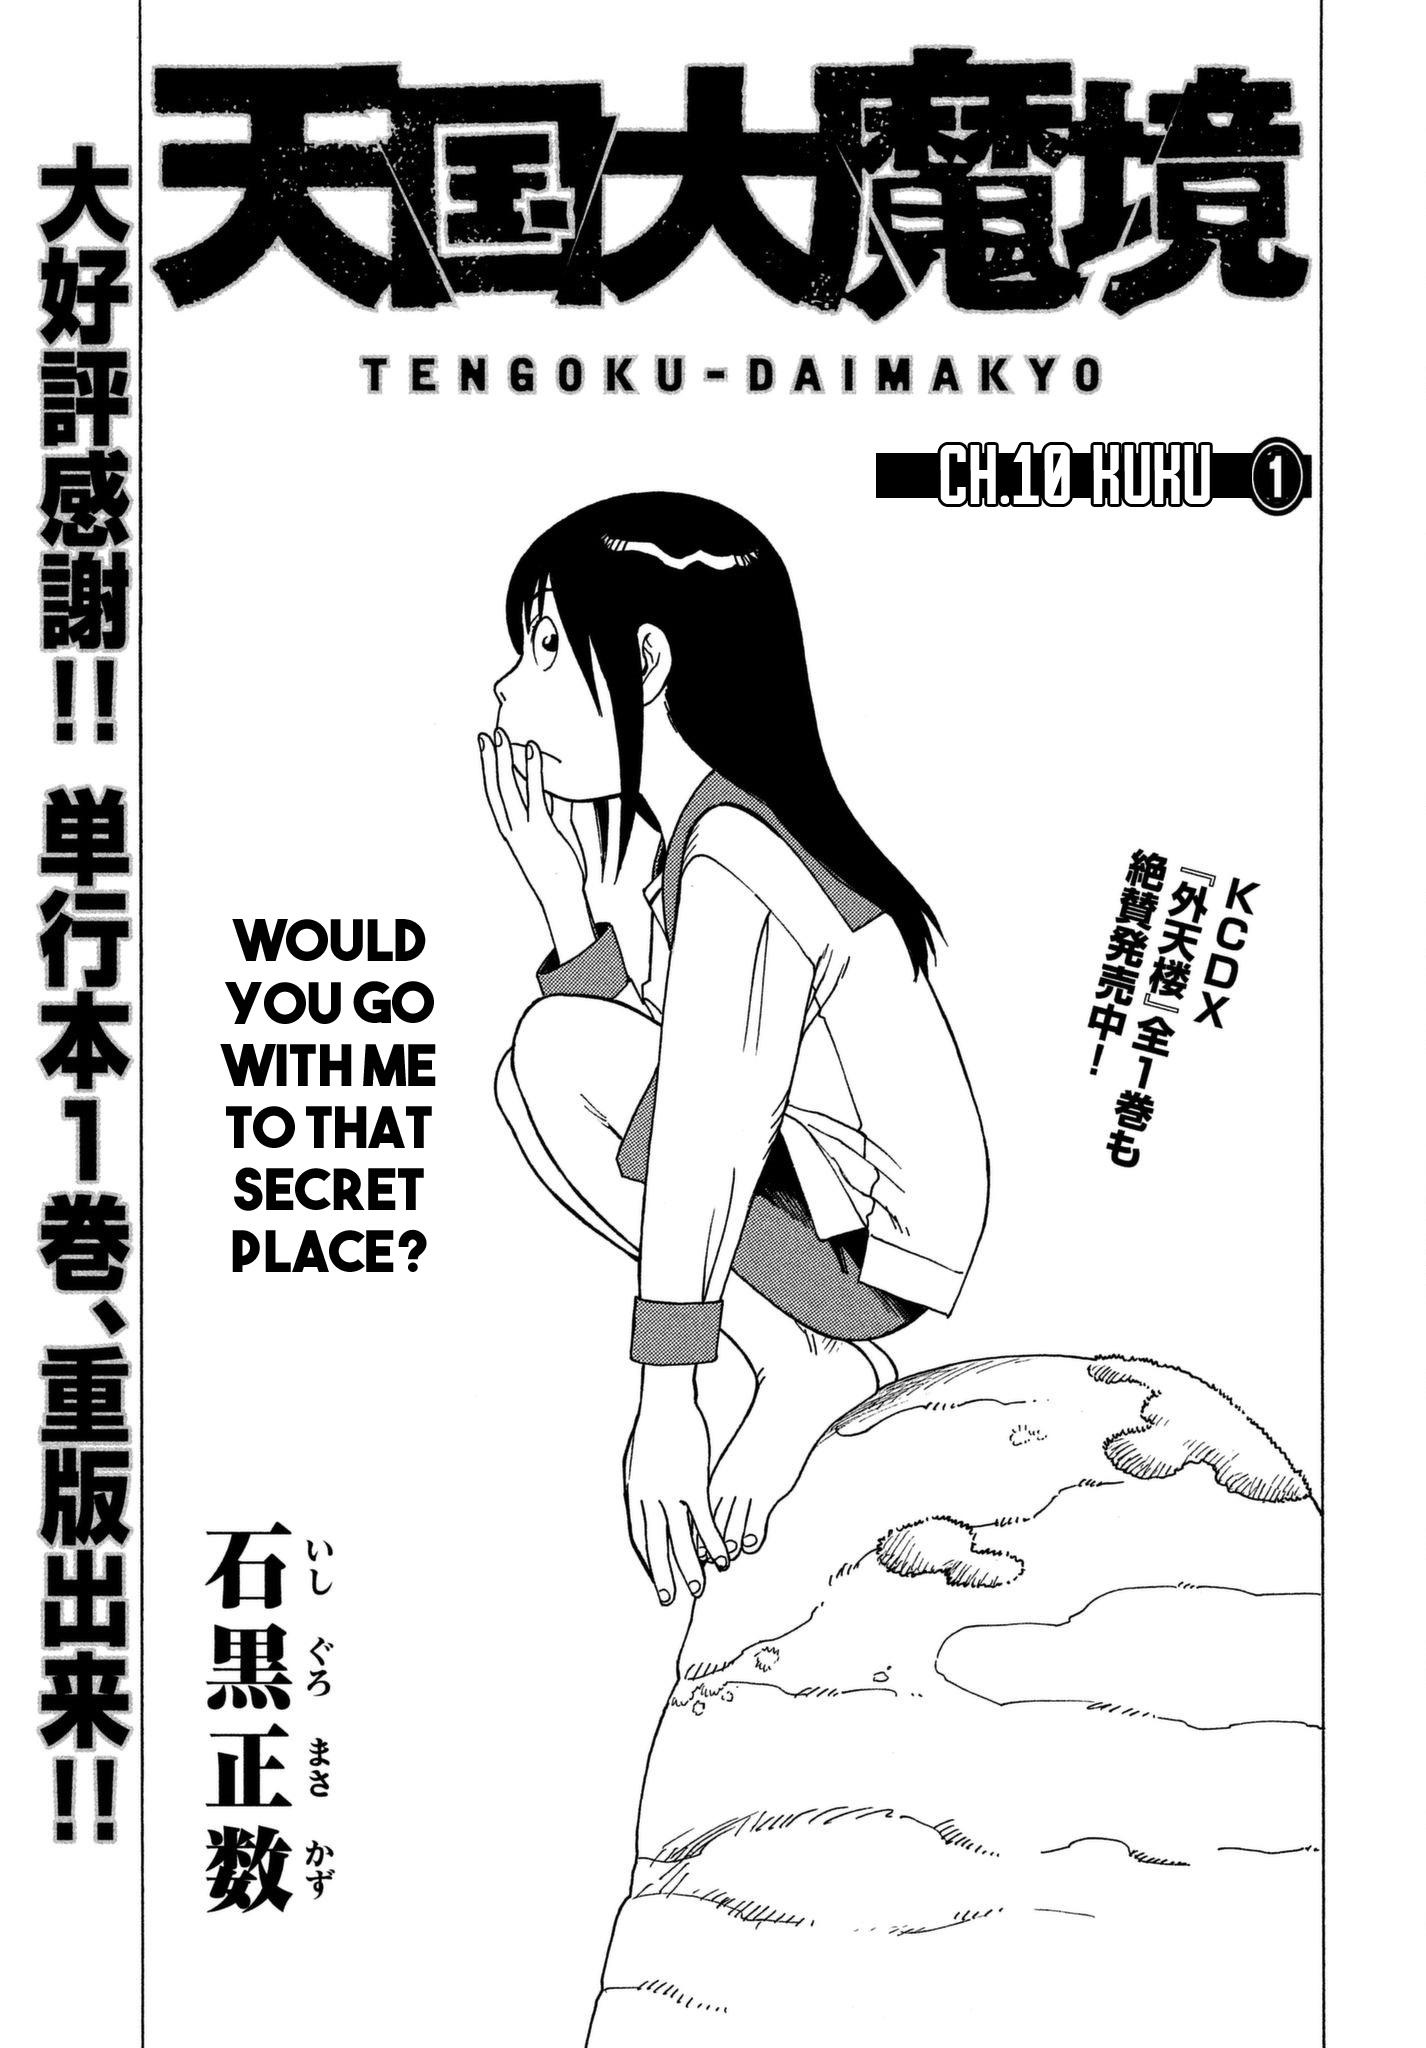 Read Tengoku Daimakyou Vol.4 Chapter 22: Immortalites ➄ - Manganelo